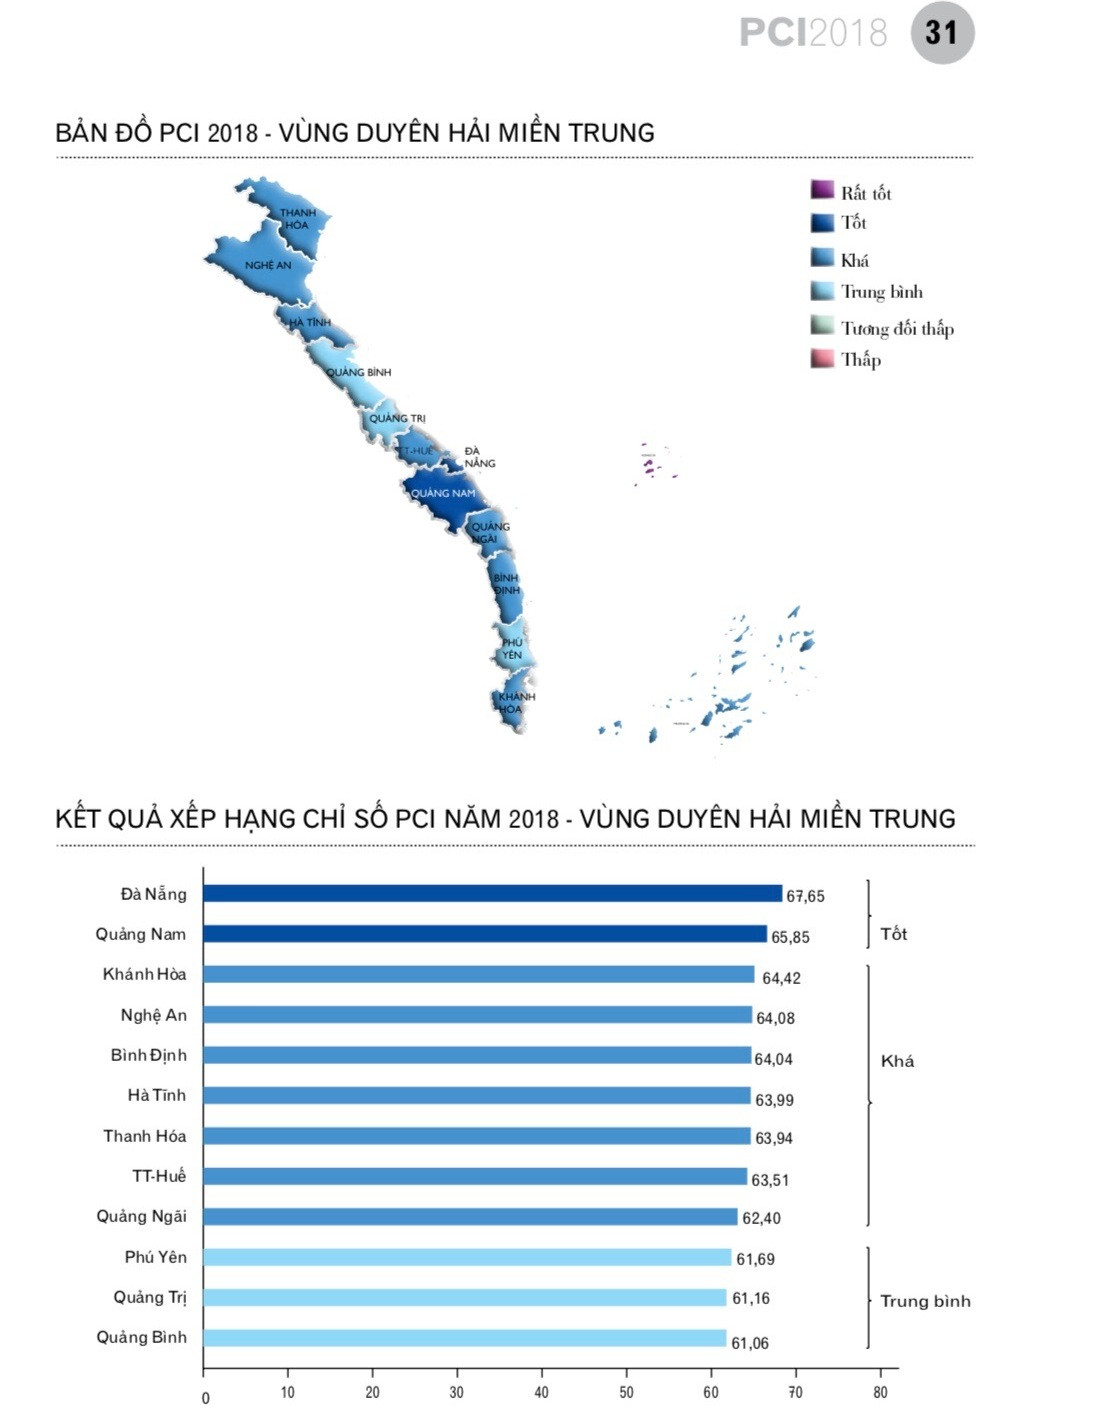 Quảng Nam xếp thứ 2 chỉ số PCI năm 2018 vùng duyên hải miền Trung. Ảnh: Đ.K